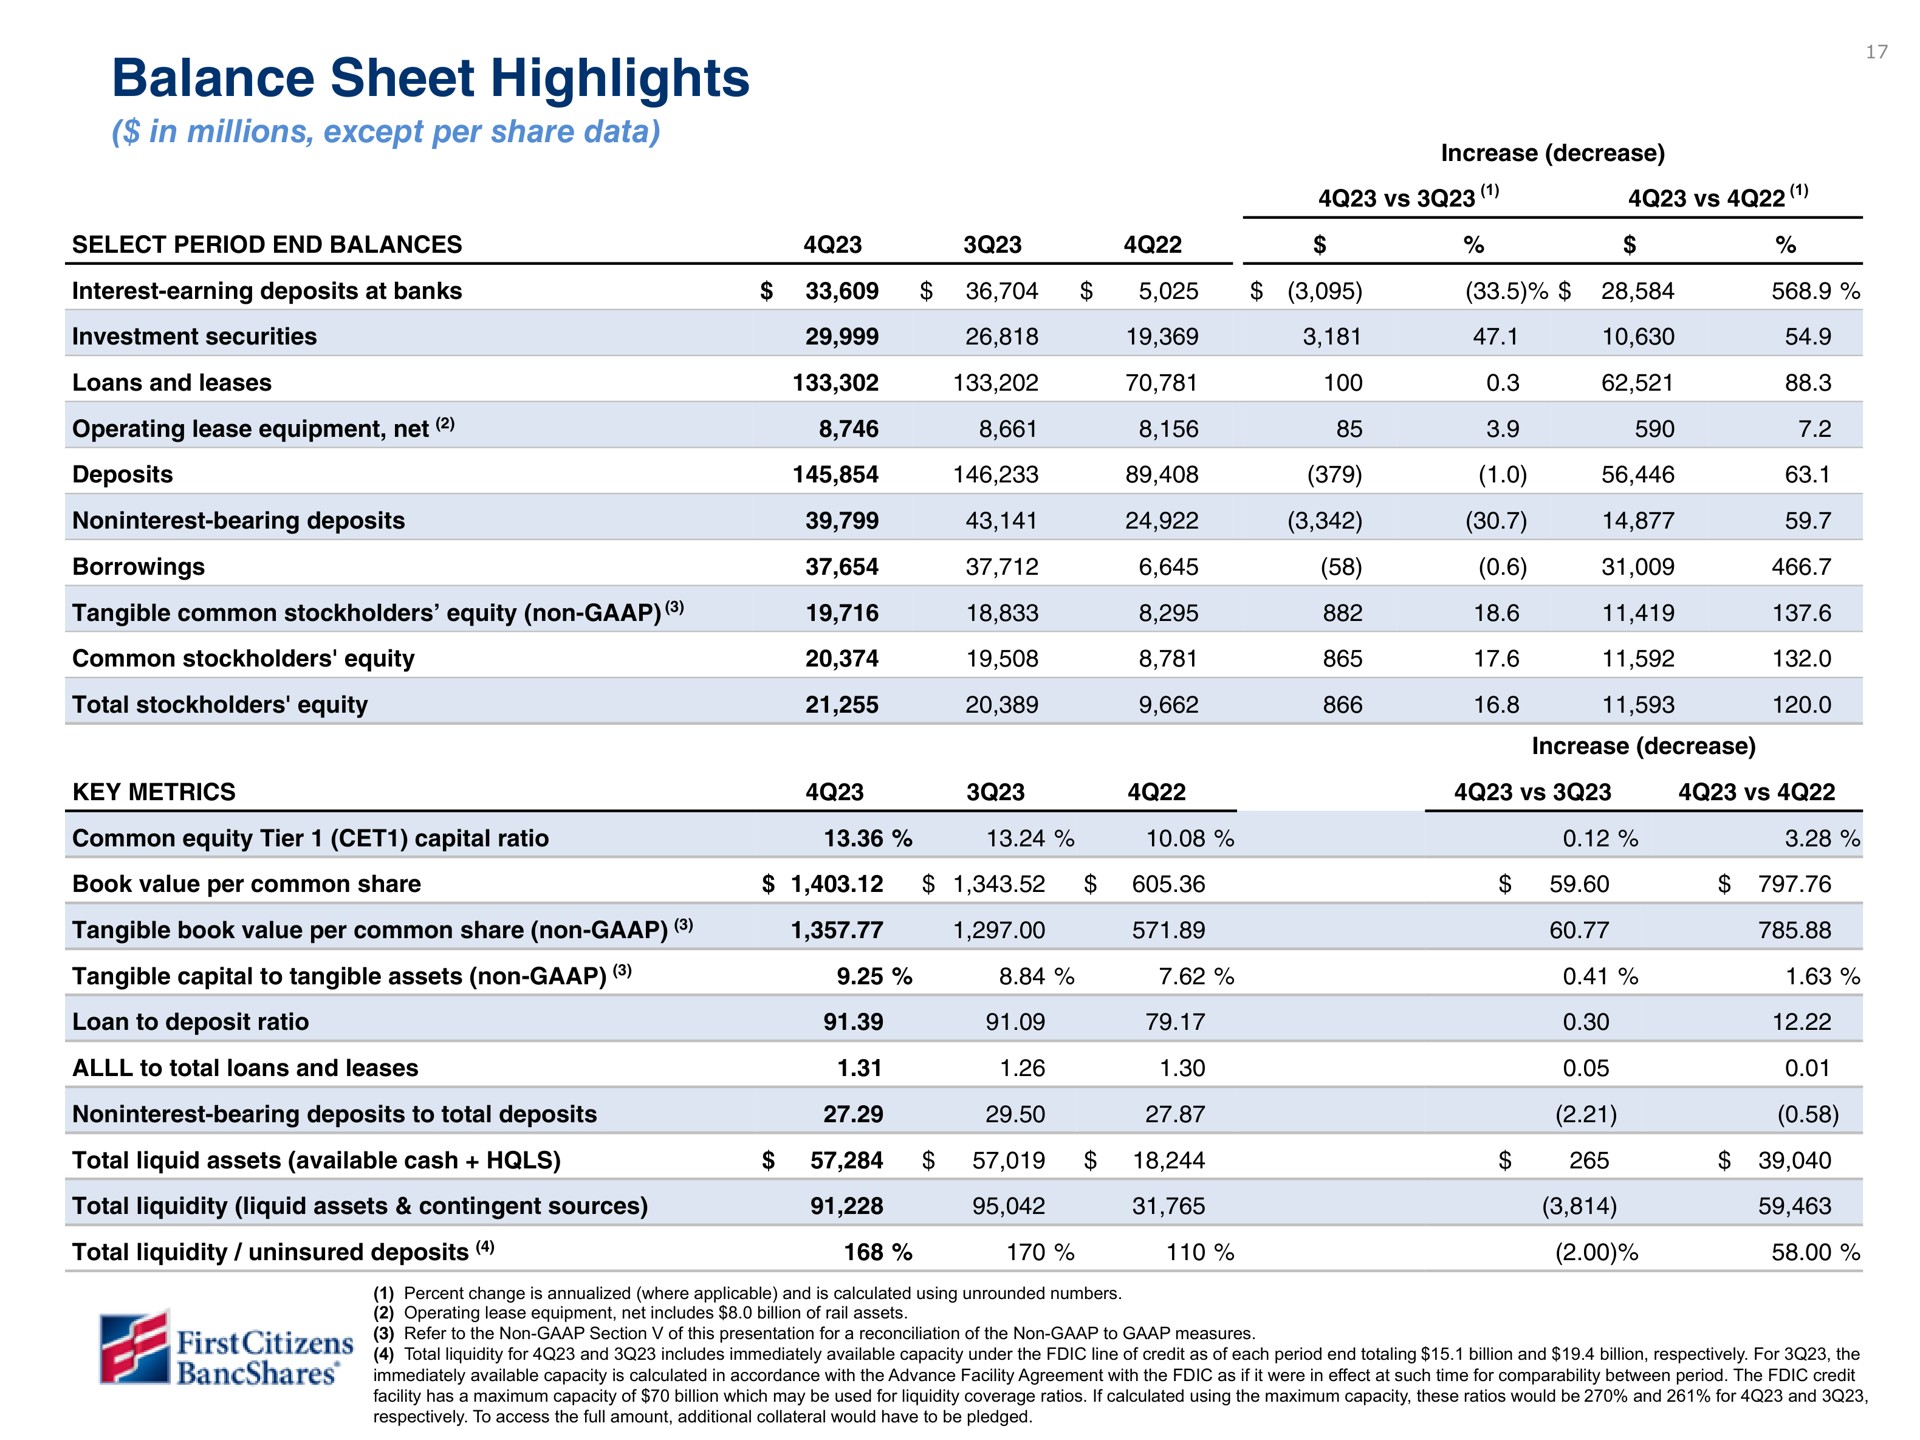 balance sheet highlights | First Citizens BancShares